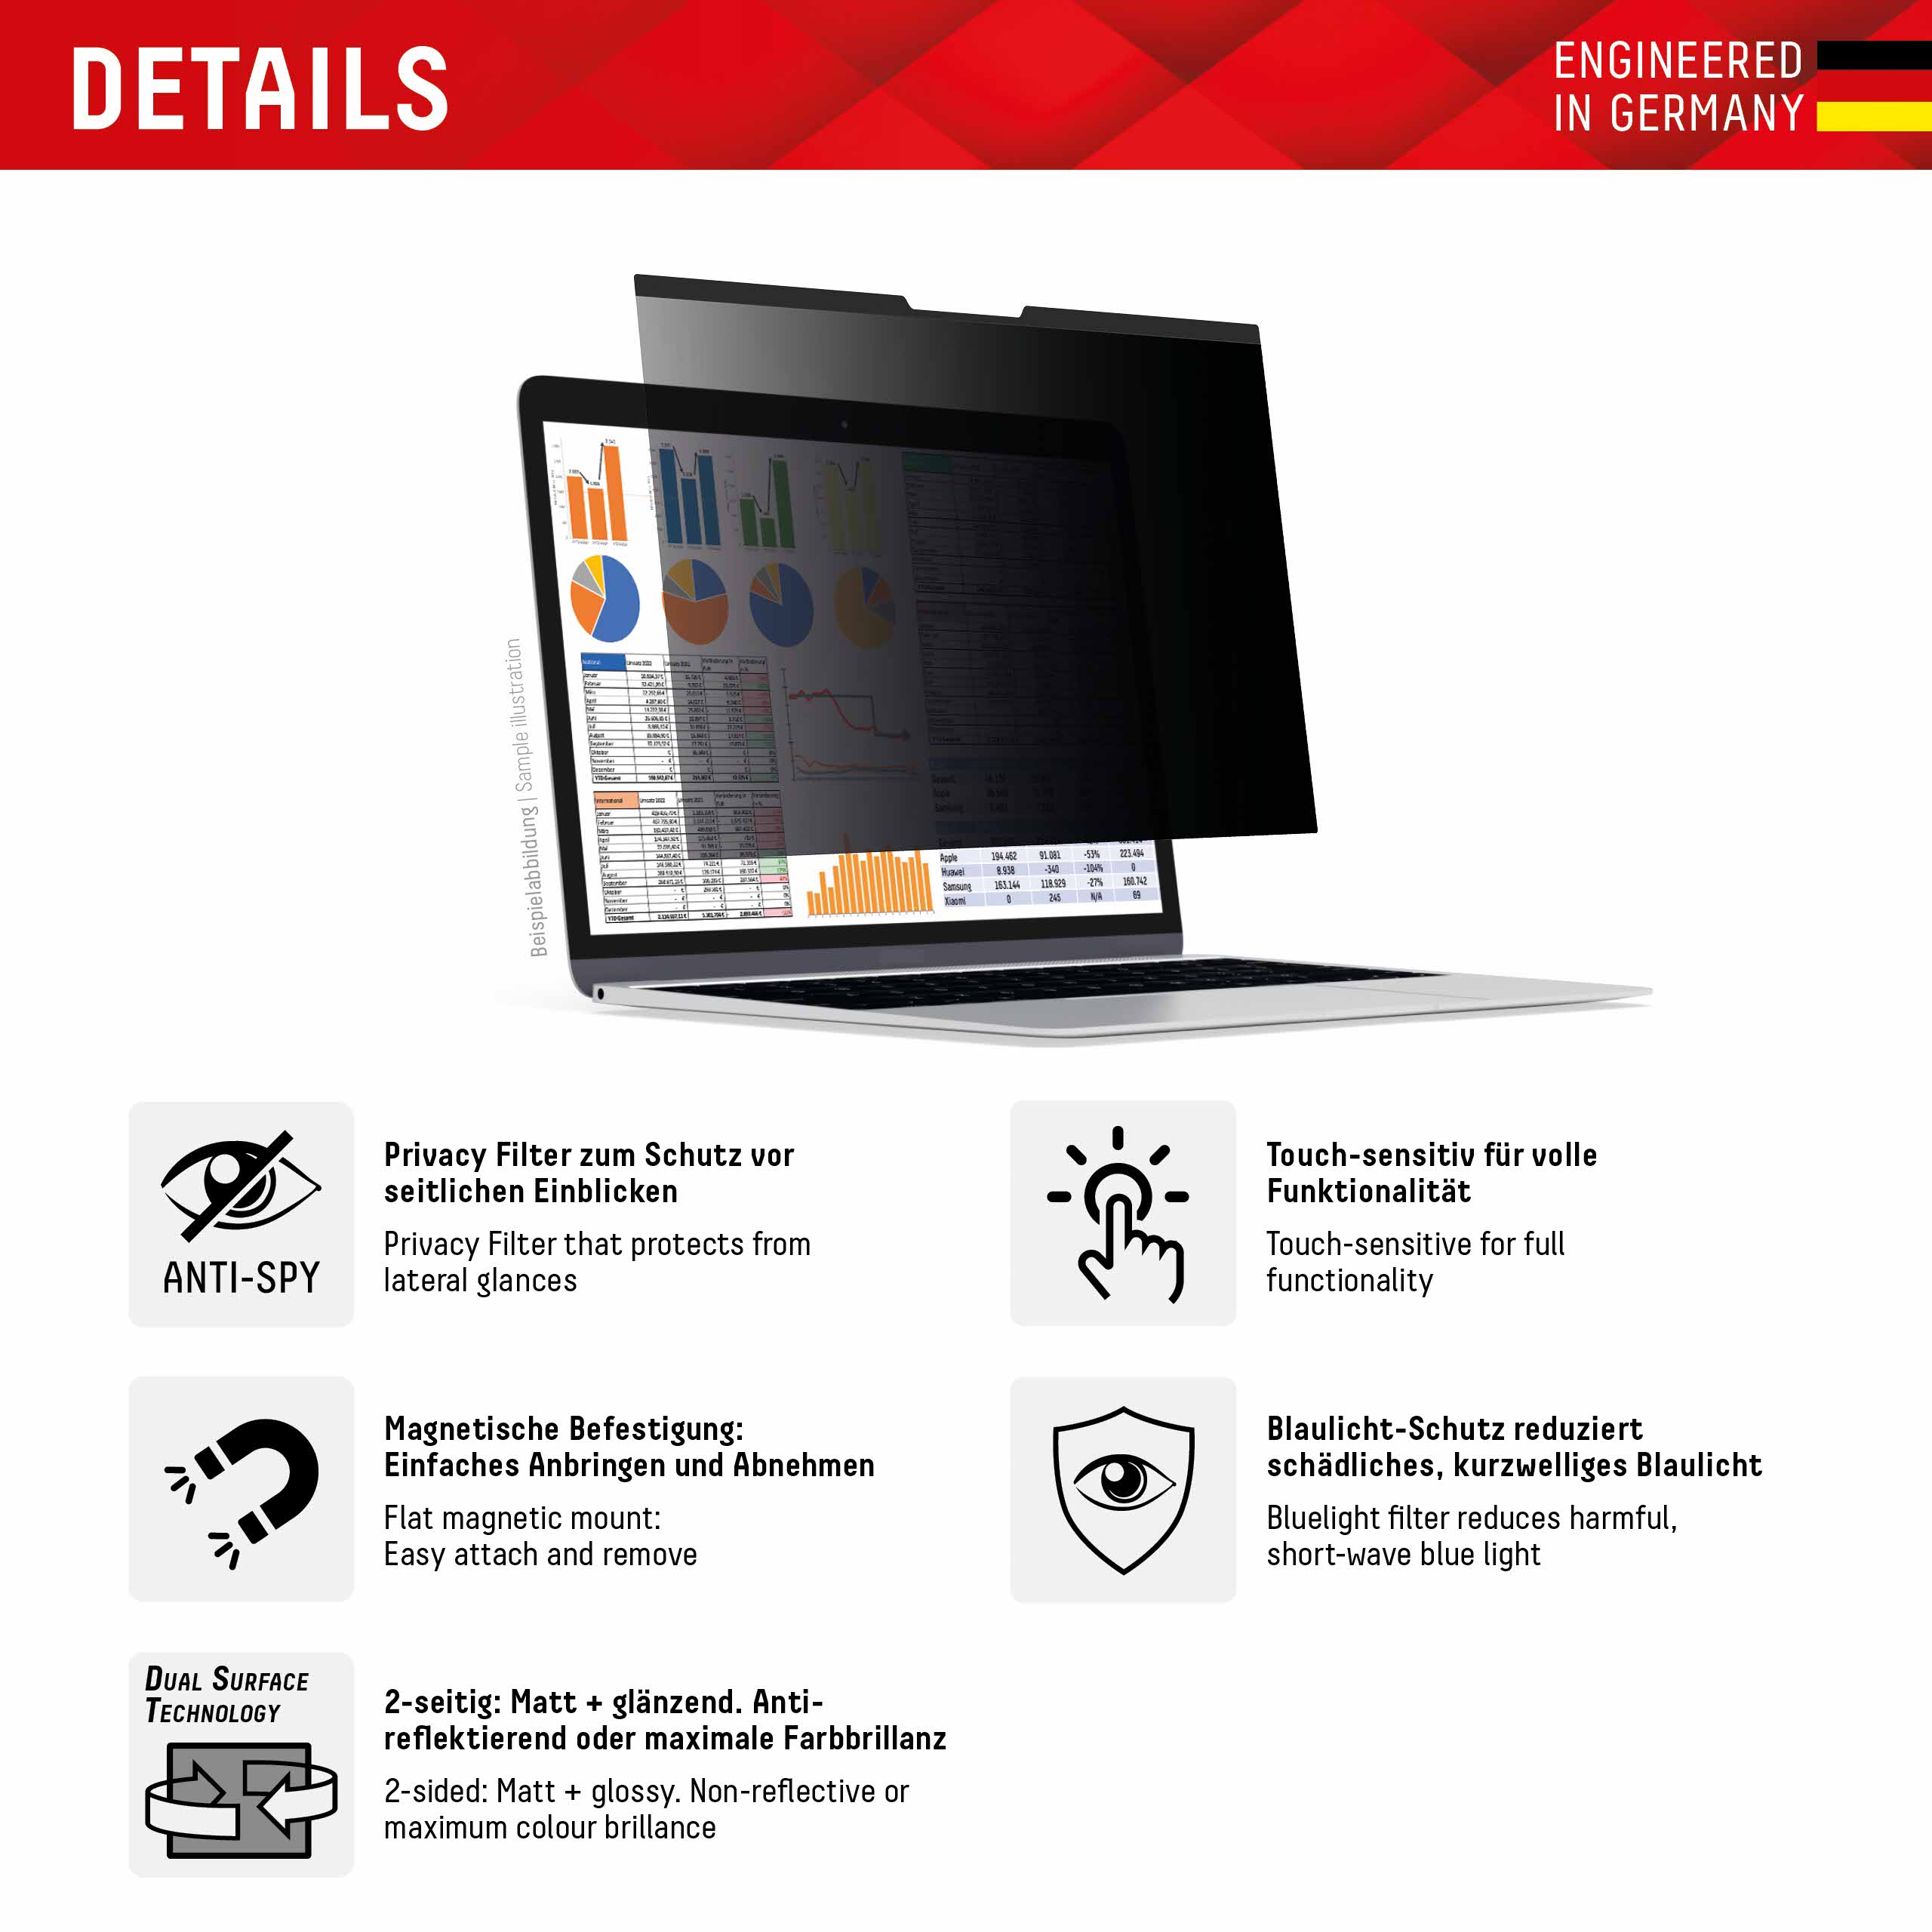 PRIVACY SAFE Magnetischer 2-Wege Blickschutzfilter für MacBook Air/ MacBook Pro 13,3‘‘